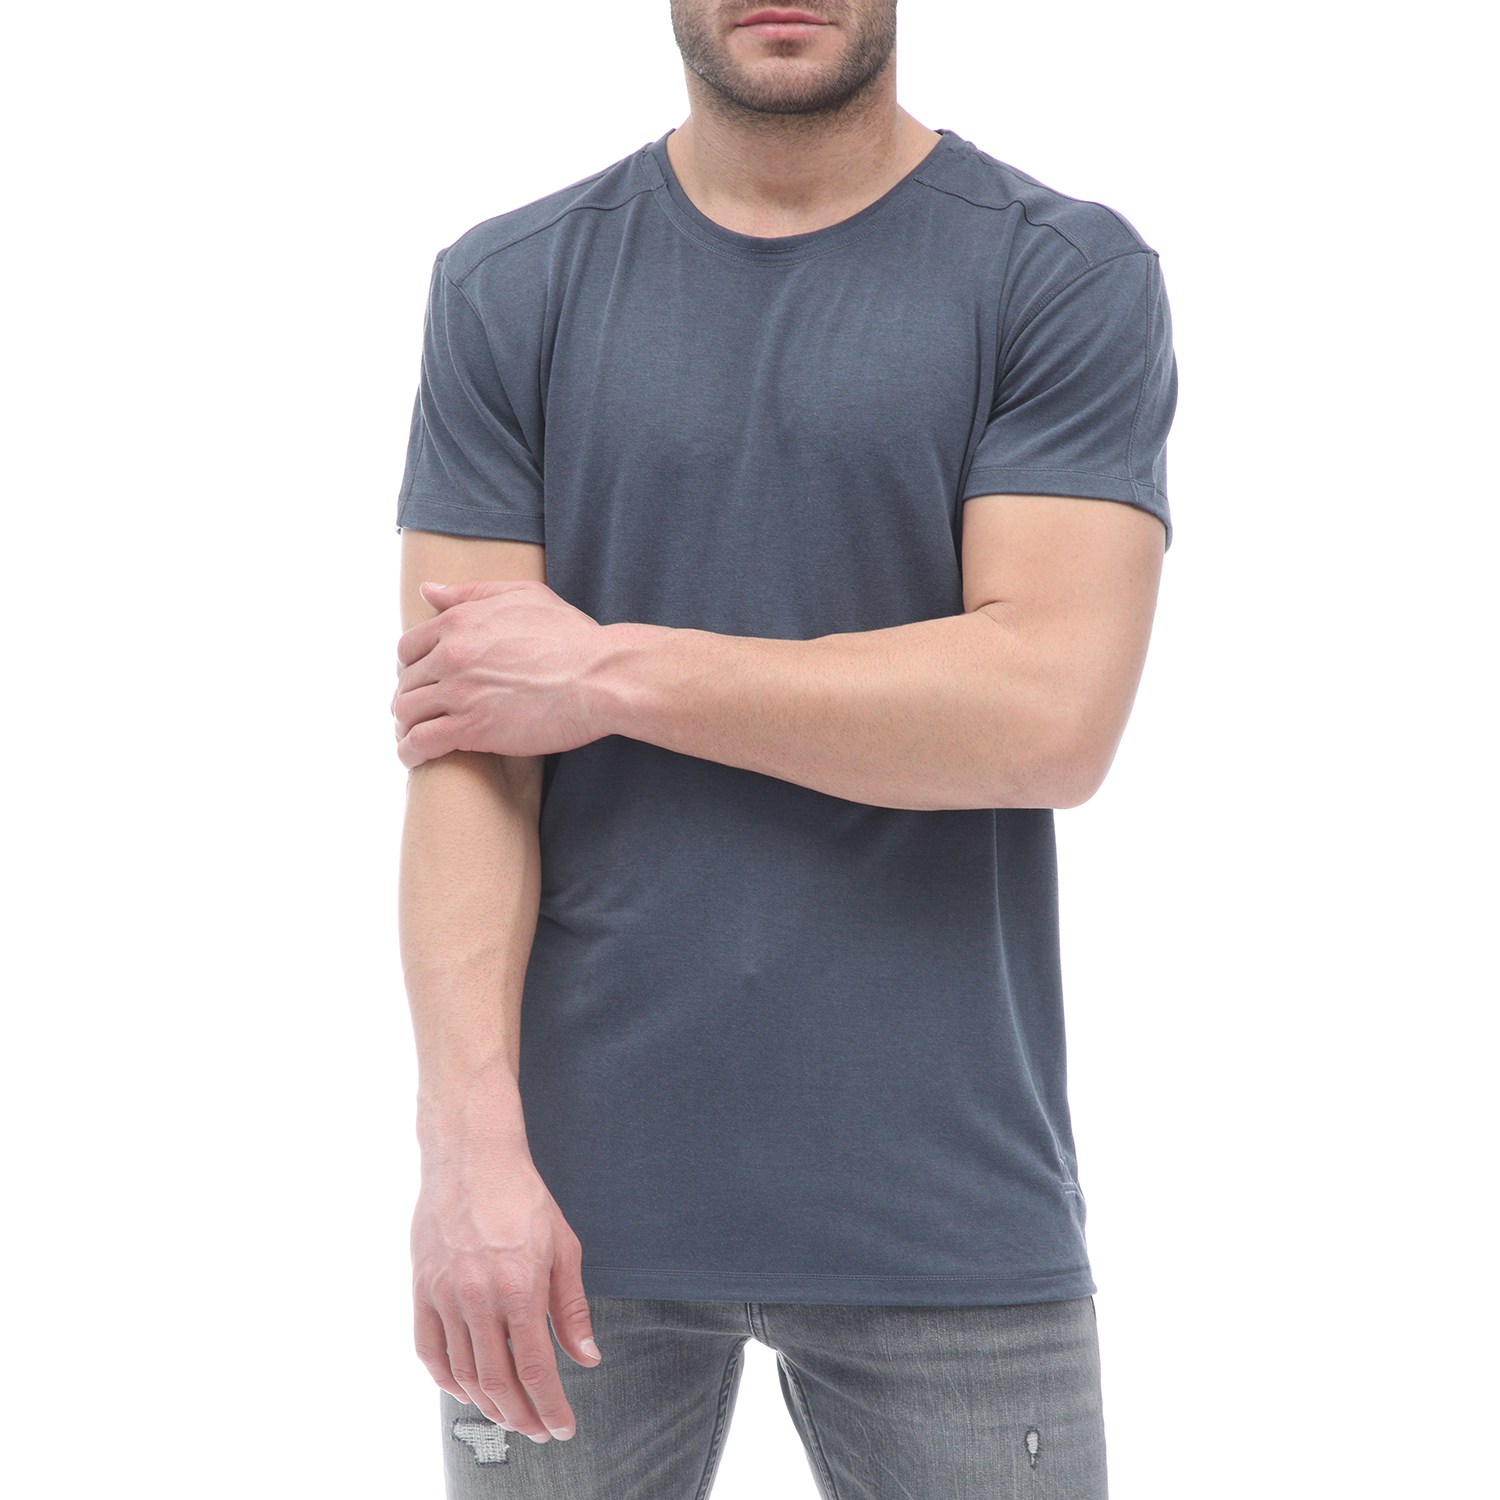 Ανδρικά/Ρούχα/Μπλούζες/Κοντομάνικες UNIFORM - Ανδρικό t-shirt UNIFORM γκρι